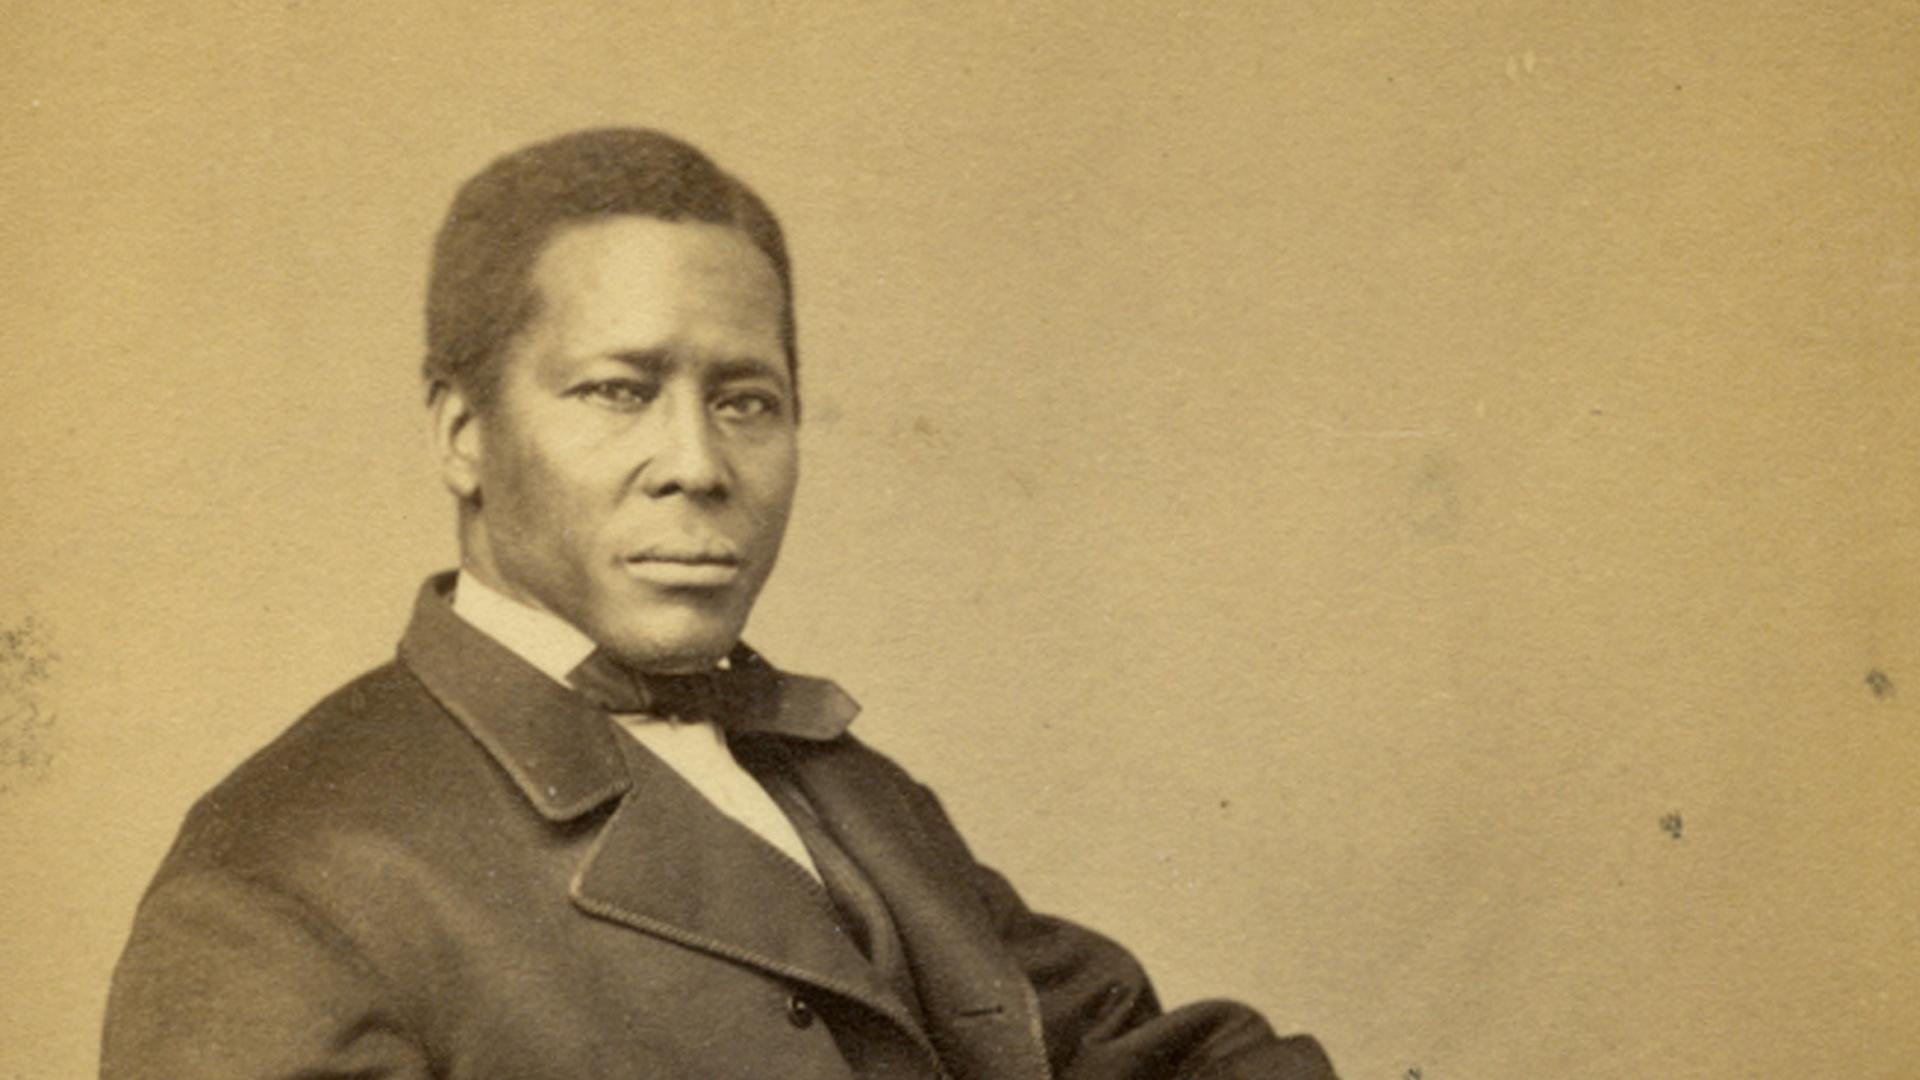 WATCH | Underground Railroad: William Still Story